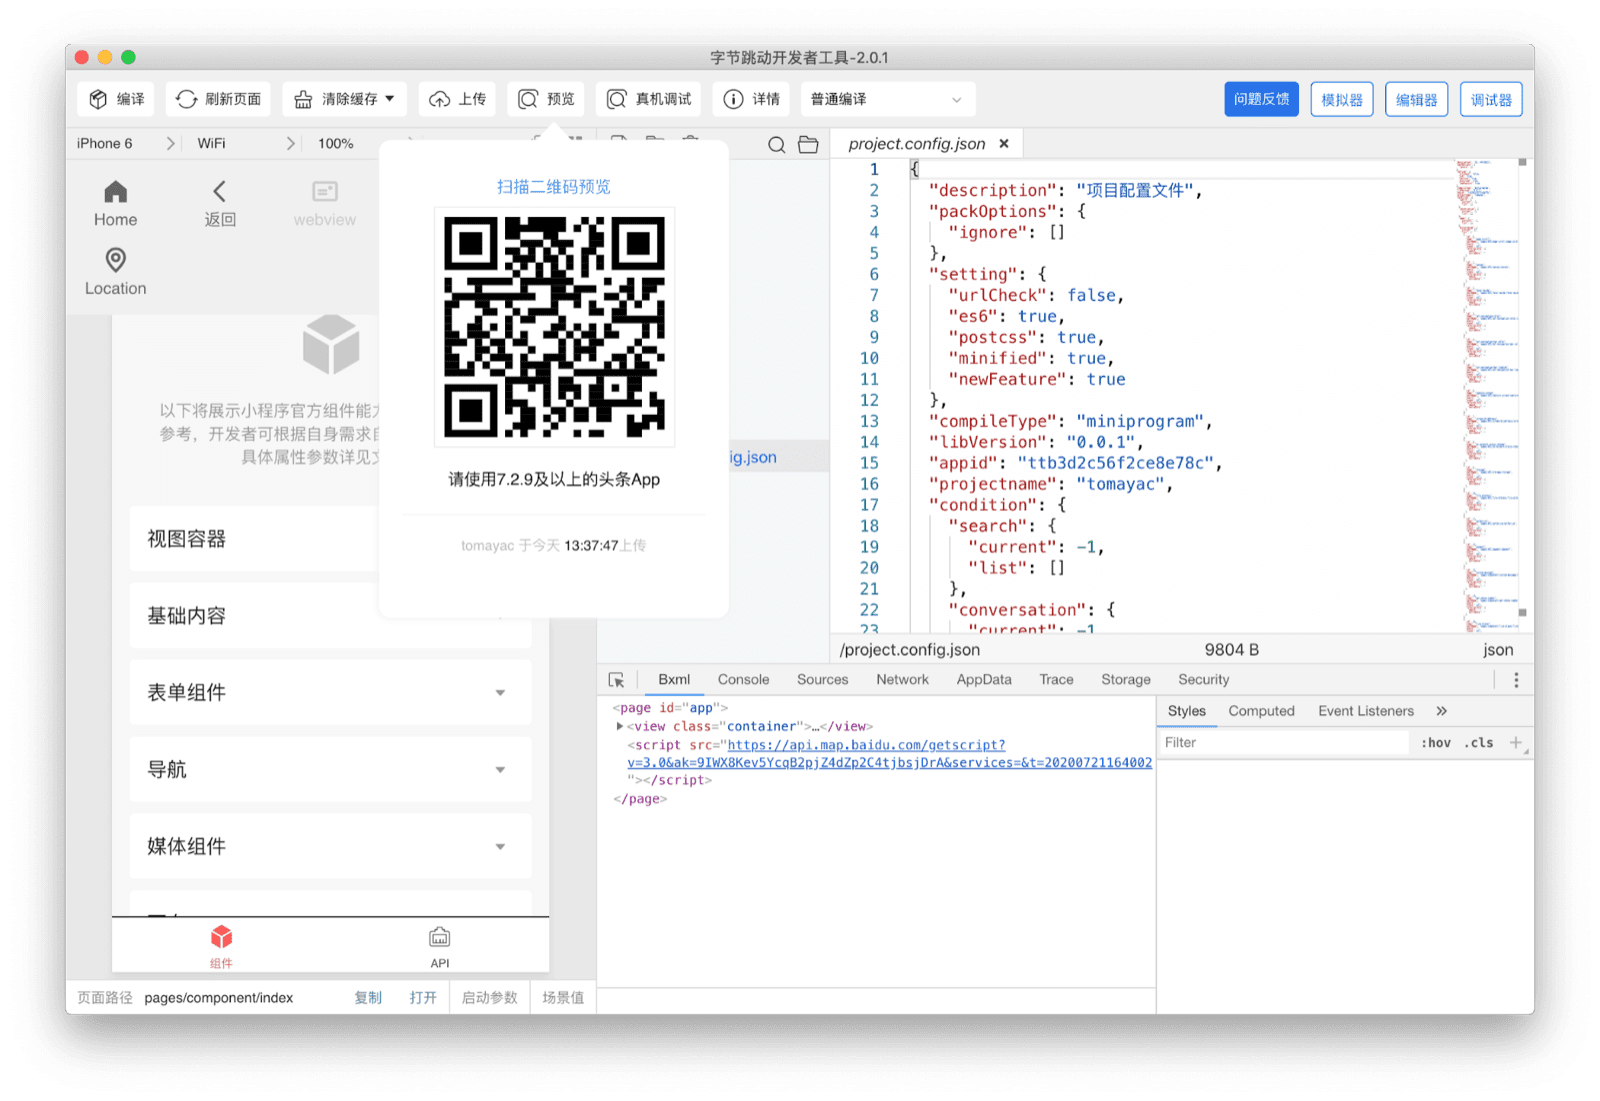 Las Herramientas para desarrolladores de ByteDance muestran un código QR que el usuario puede escanear con la app de Douyin para ver la miniapp actual en su dispositivo.